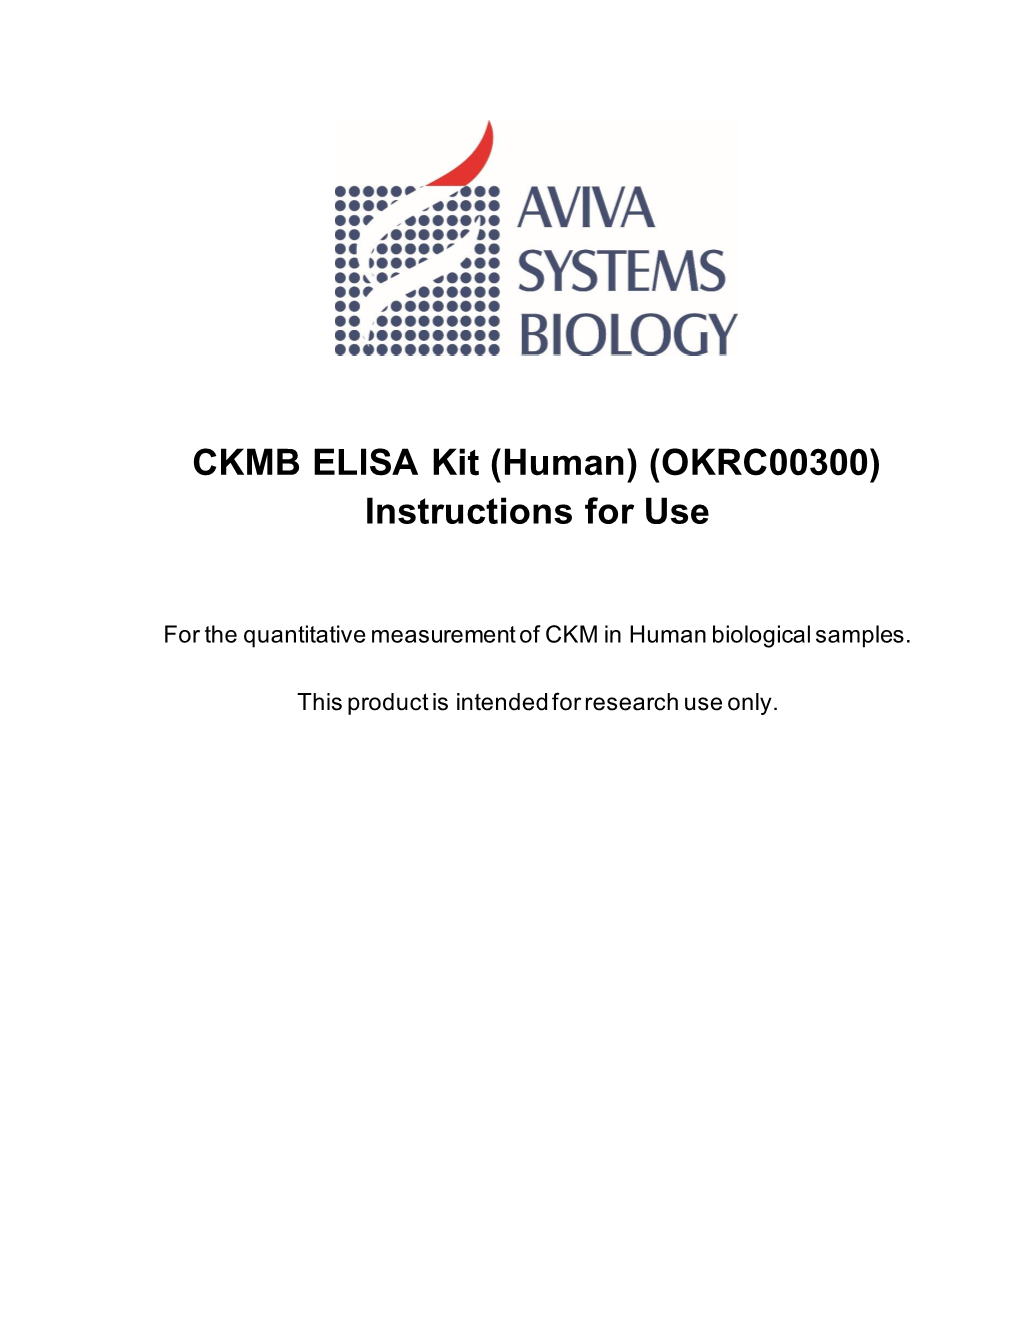 CKMB ELISA Kit (Human) (OKRC00300) Instructions for Use